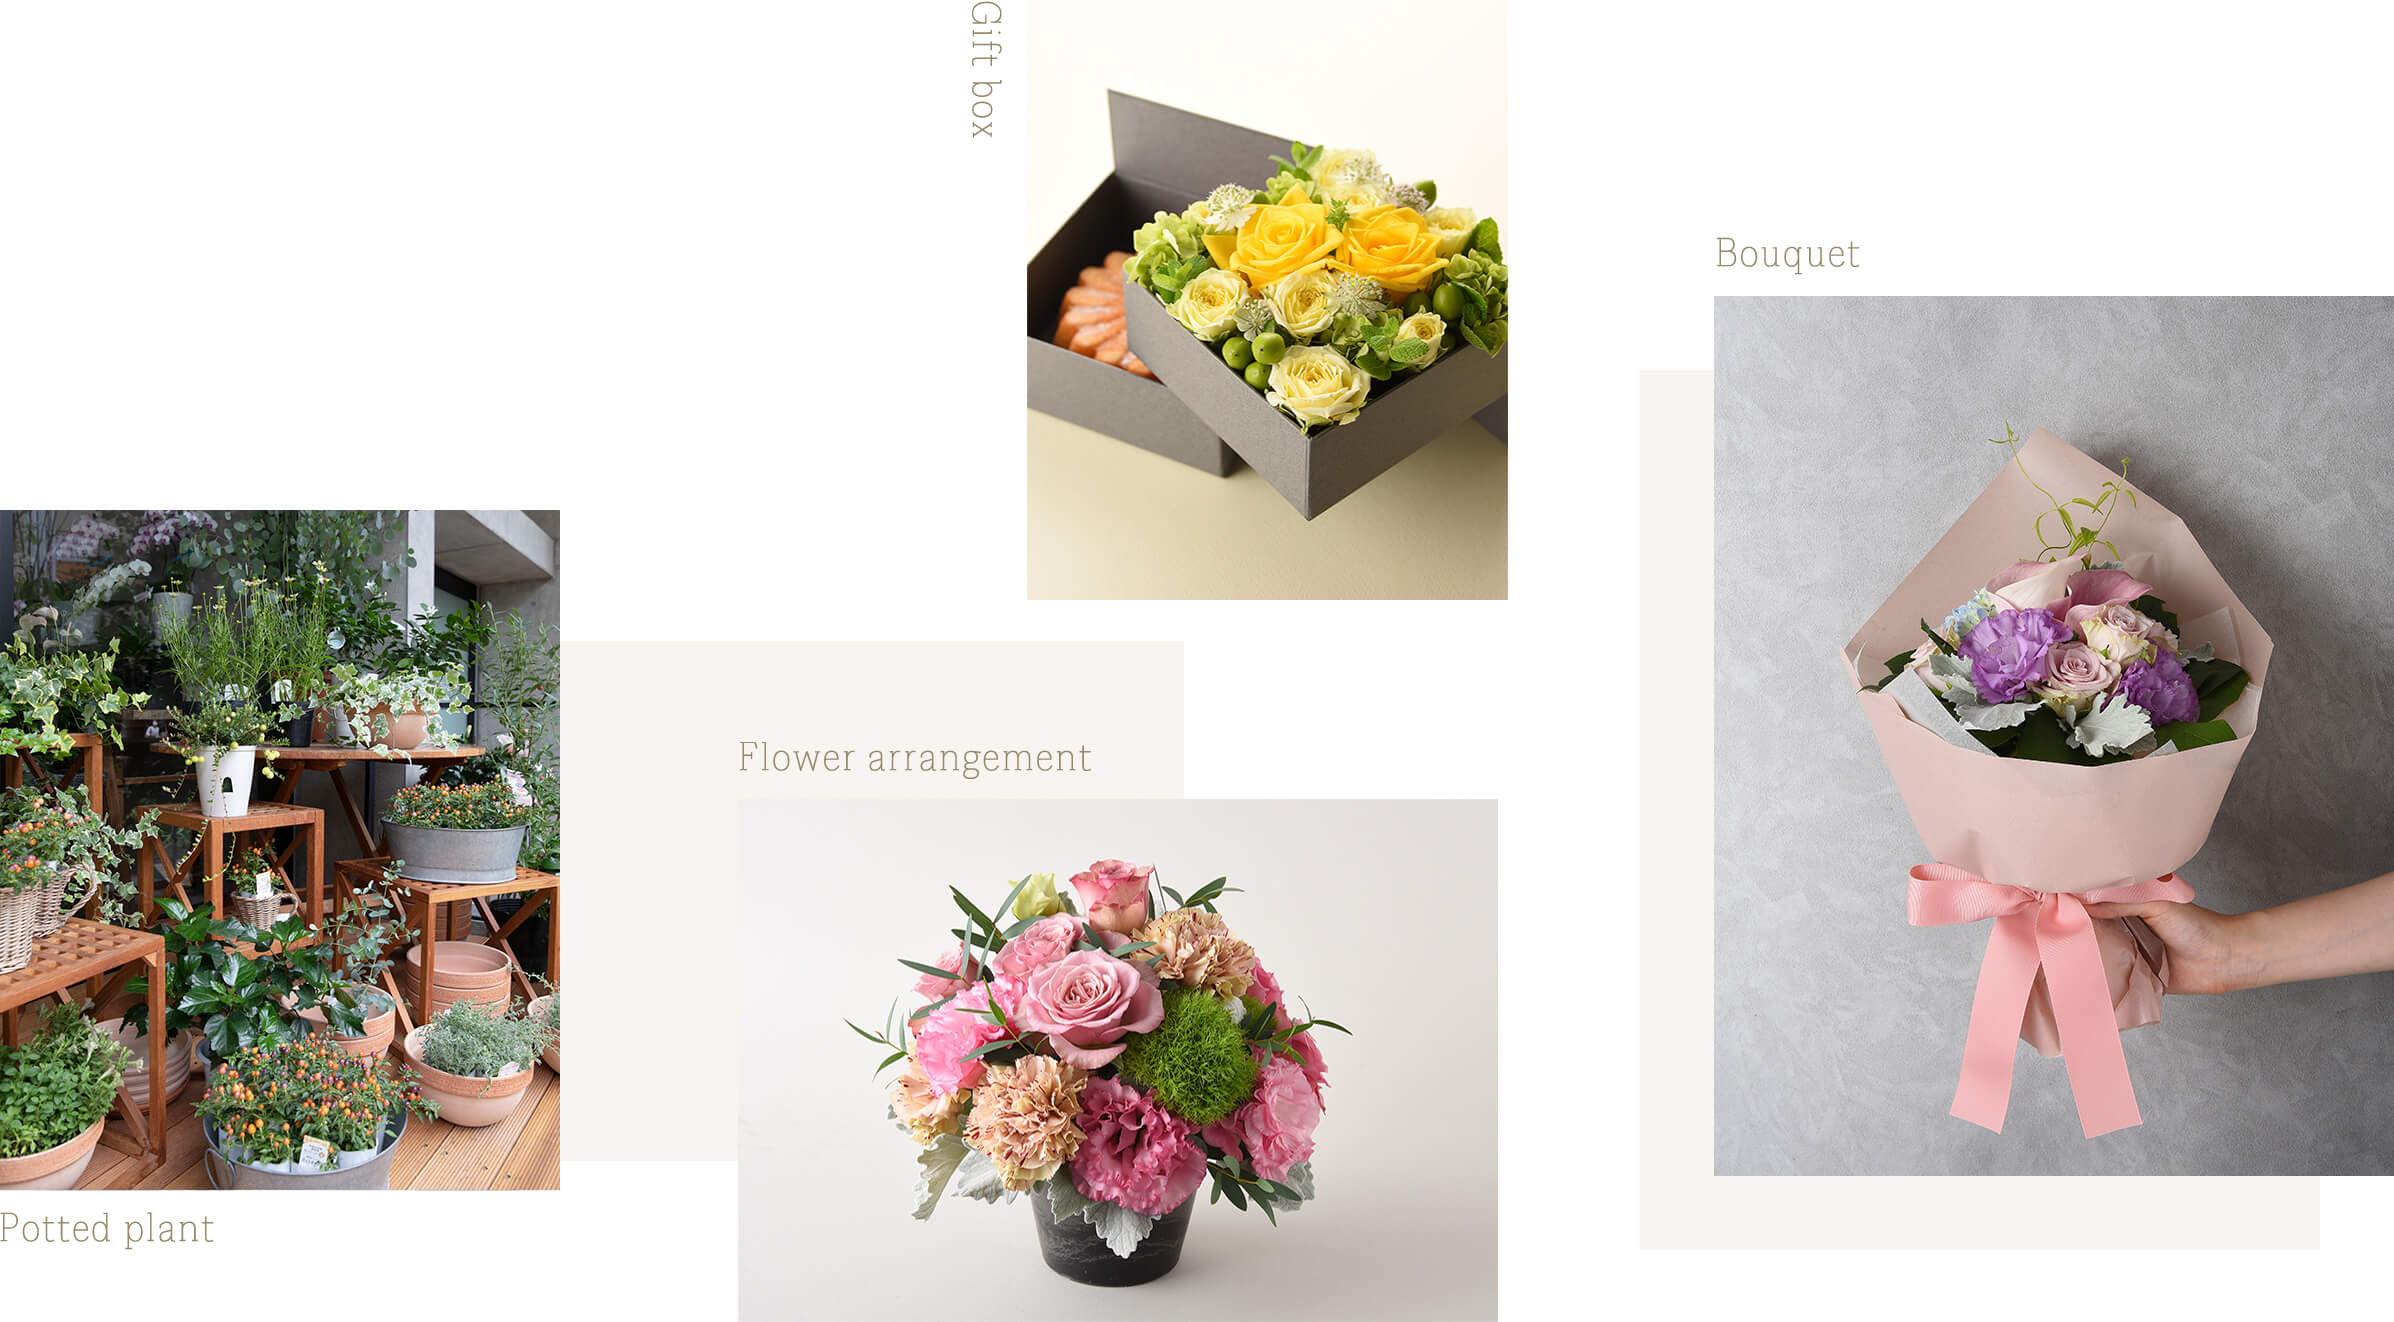 Gift box, Flower arrangement, Bonquet, Potted plant